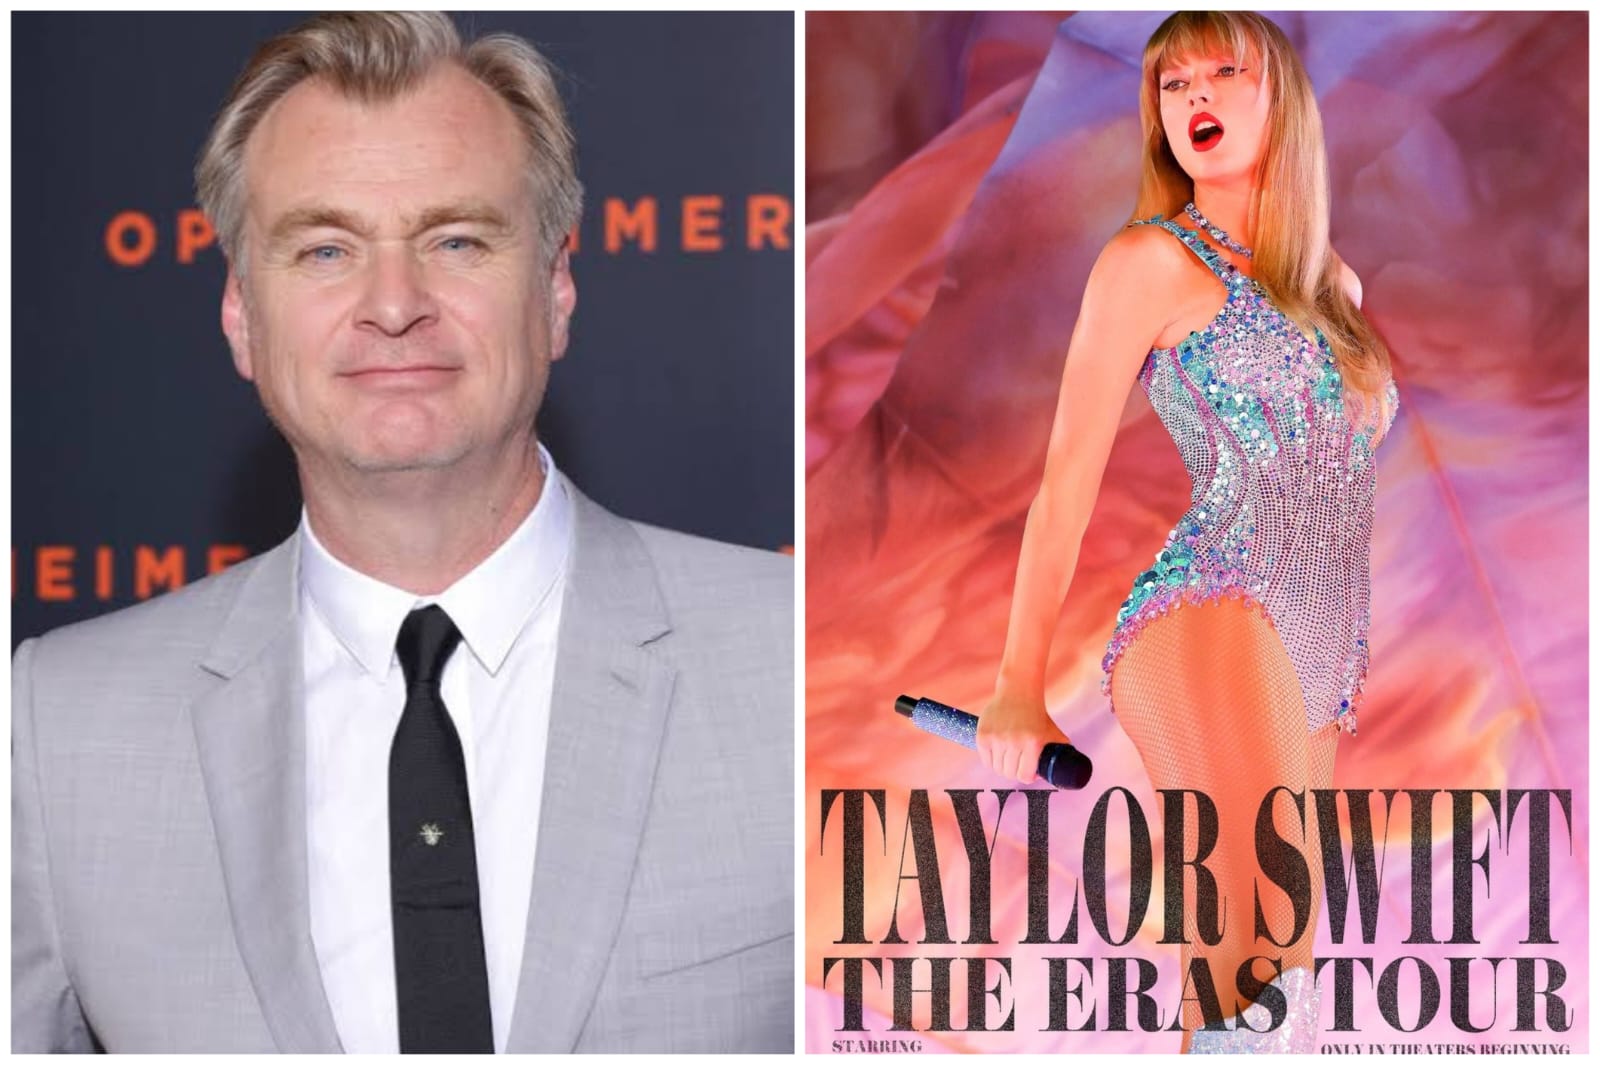 The Eras Tour Christopher Nolan Diz Que O Sucesso Do Filme Show De Taylor Swift Está 